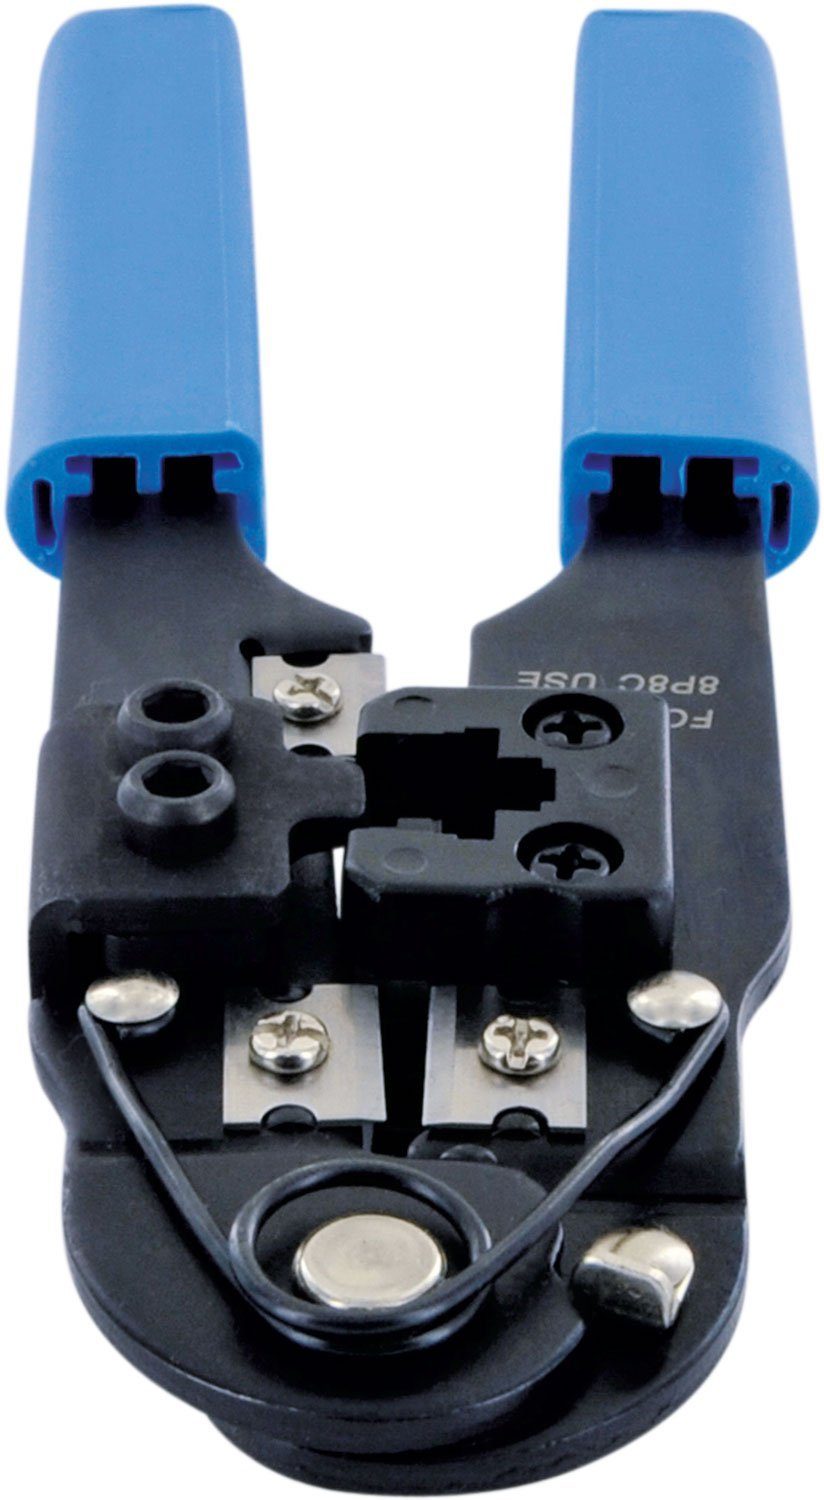 Schwaiger Crimpzange NWZ01 531, für verwendbar Universal RJ45-Stecker